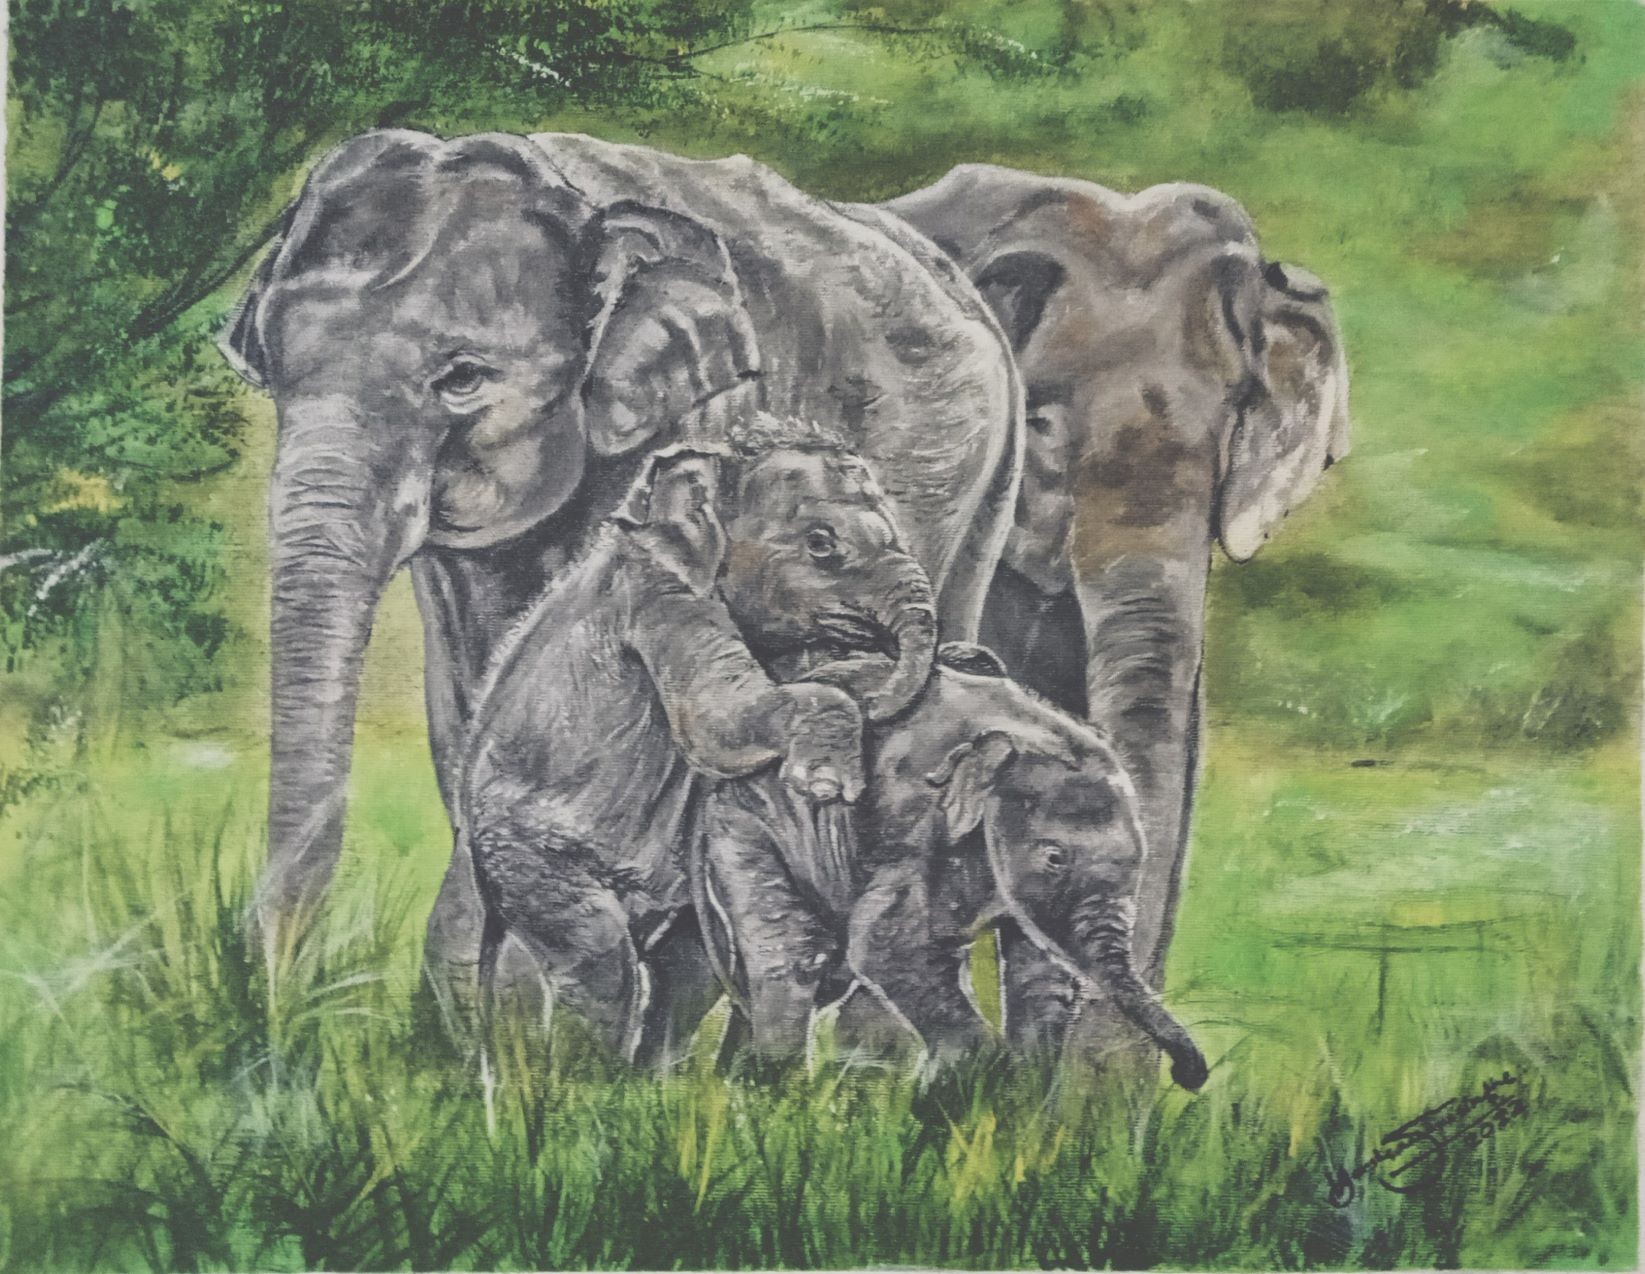 Elephant family by Harsha Kumara